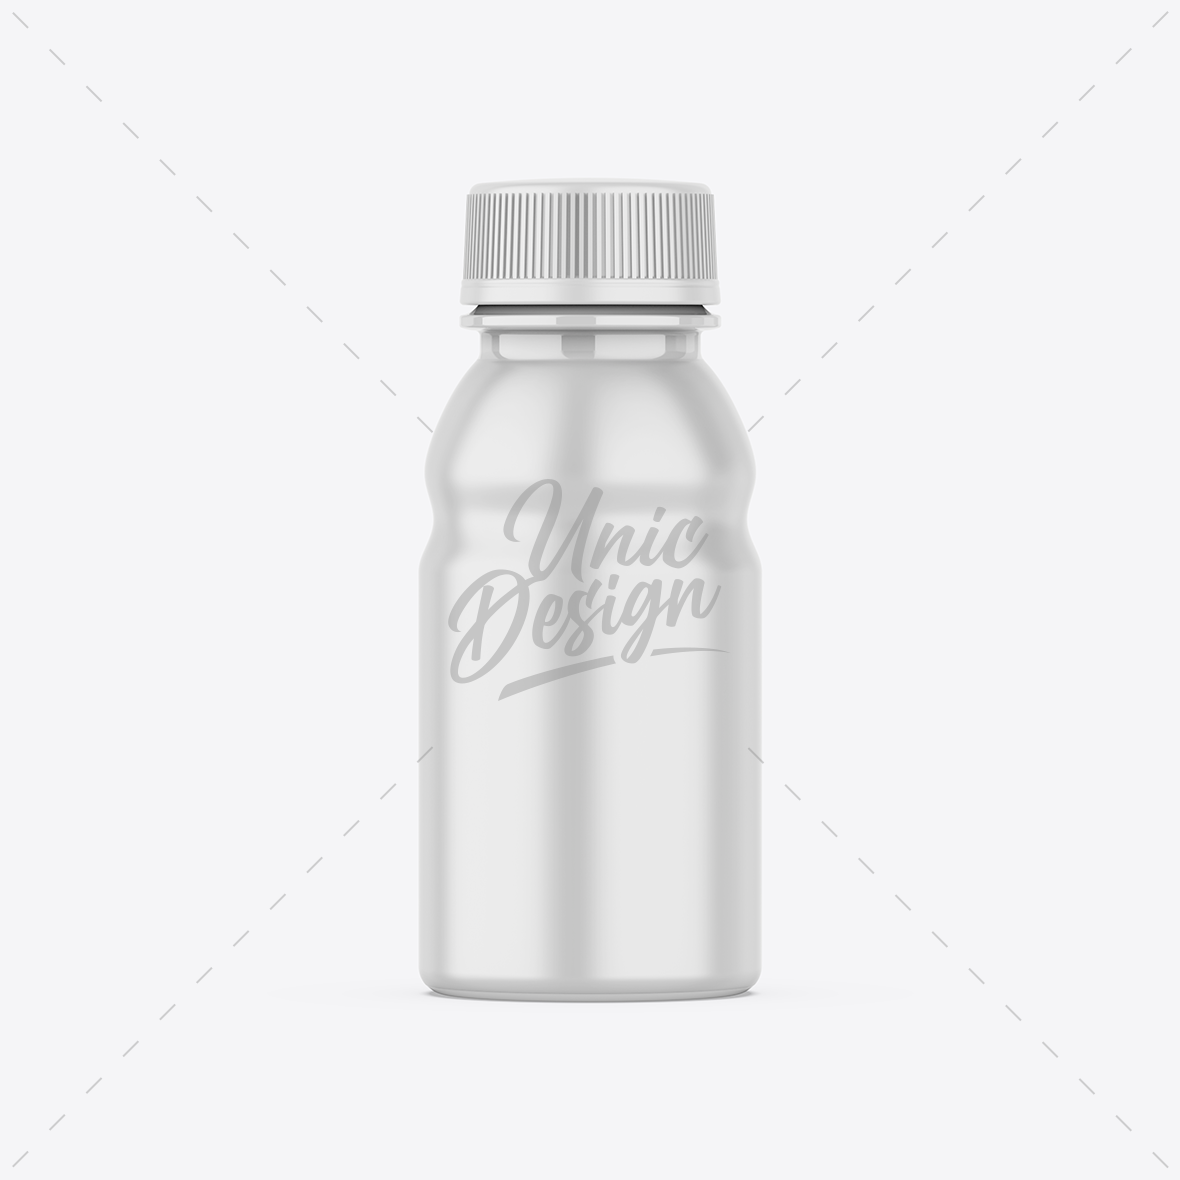 Supplement Bottle Mockup